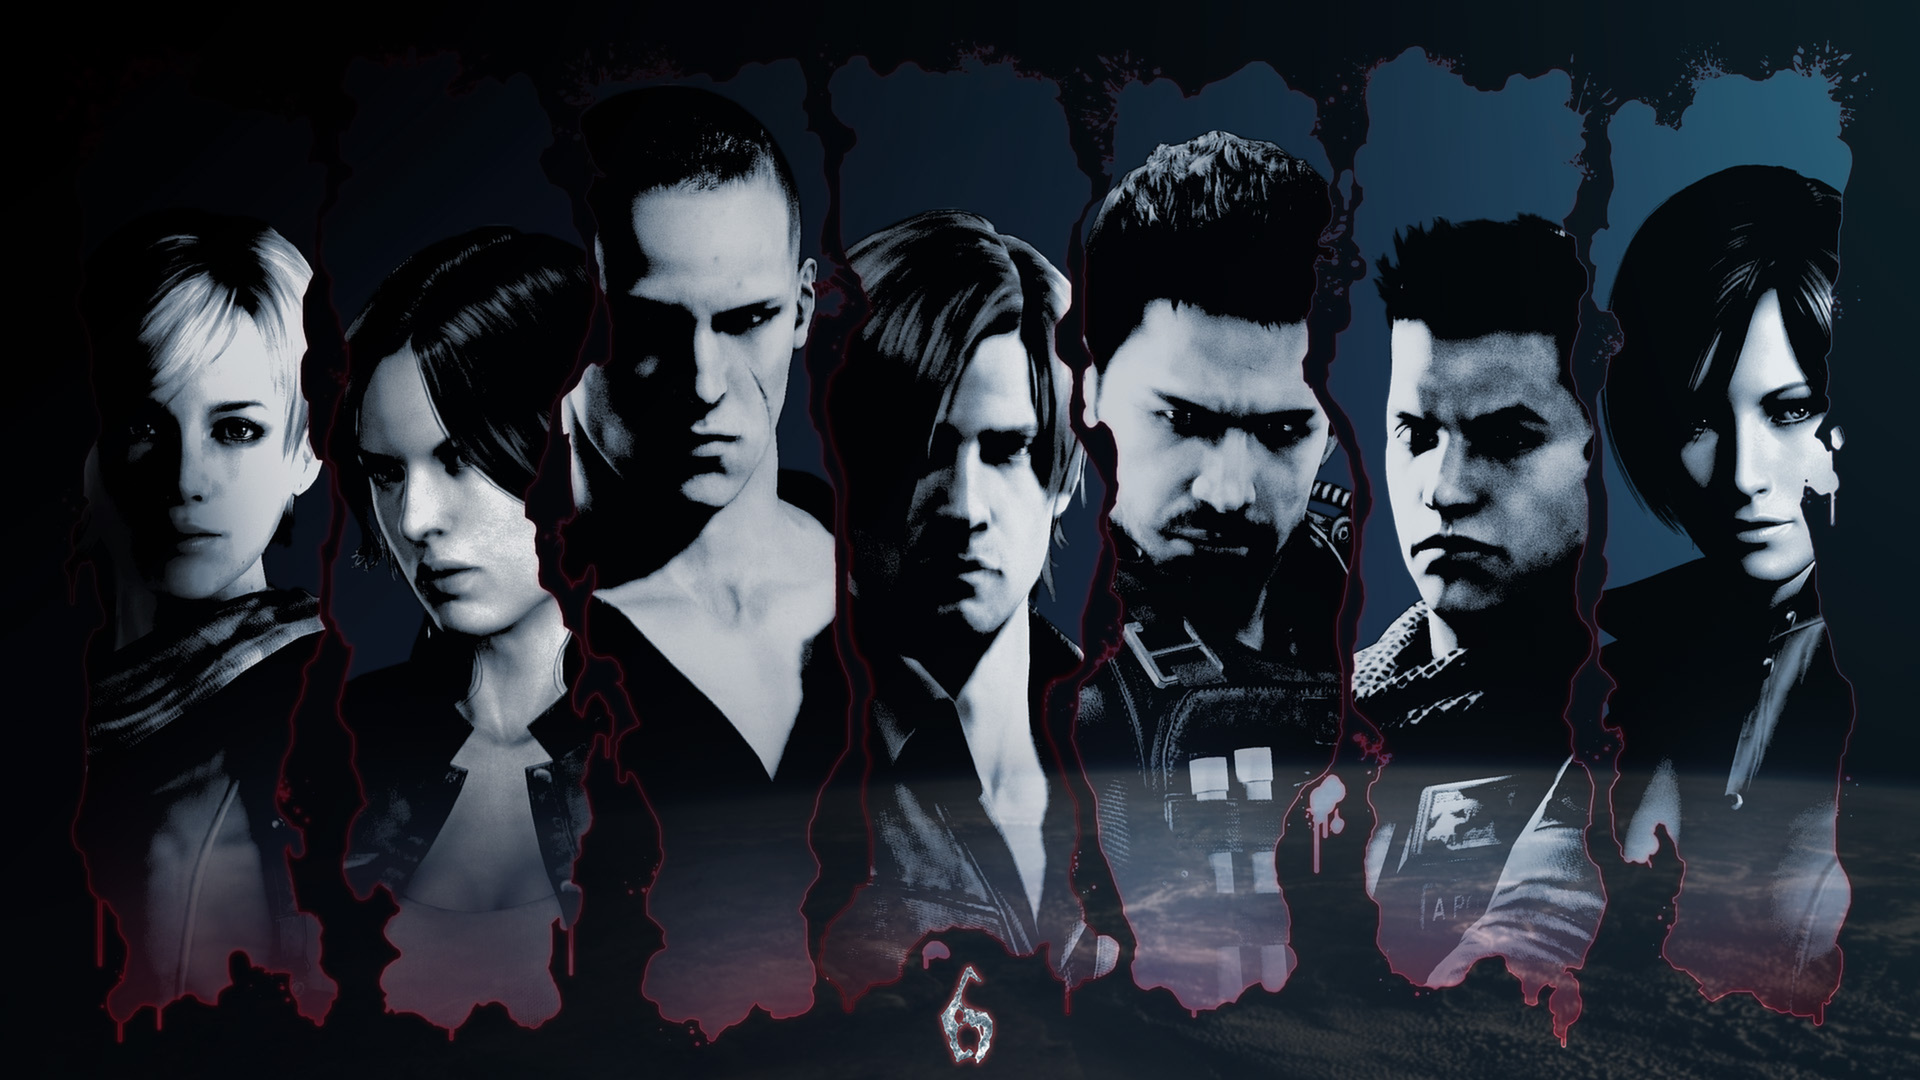 Resident Evil 6 Wallpaper On Steam